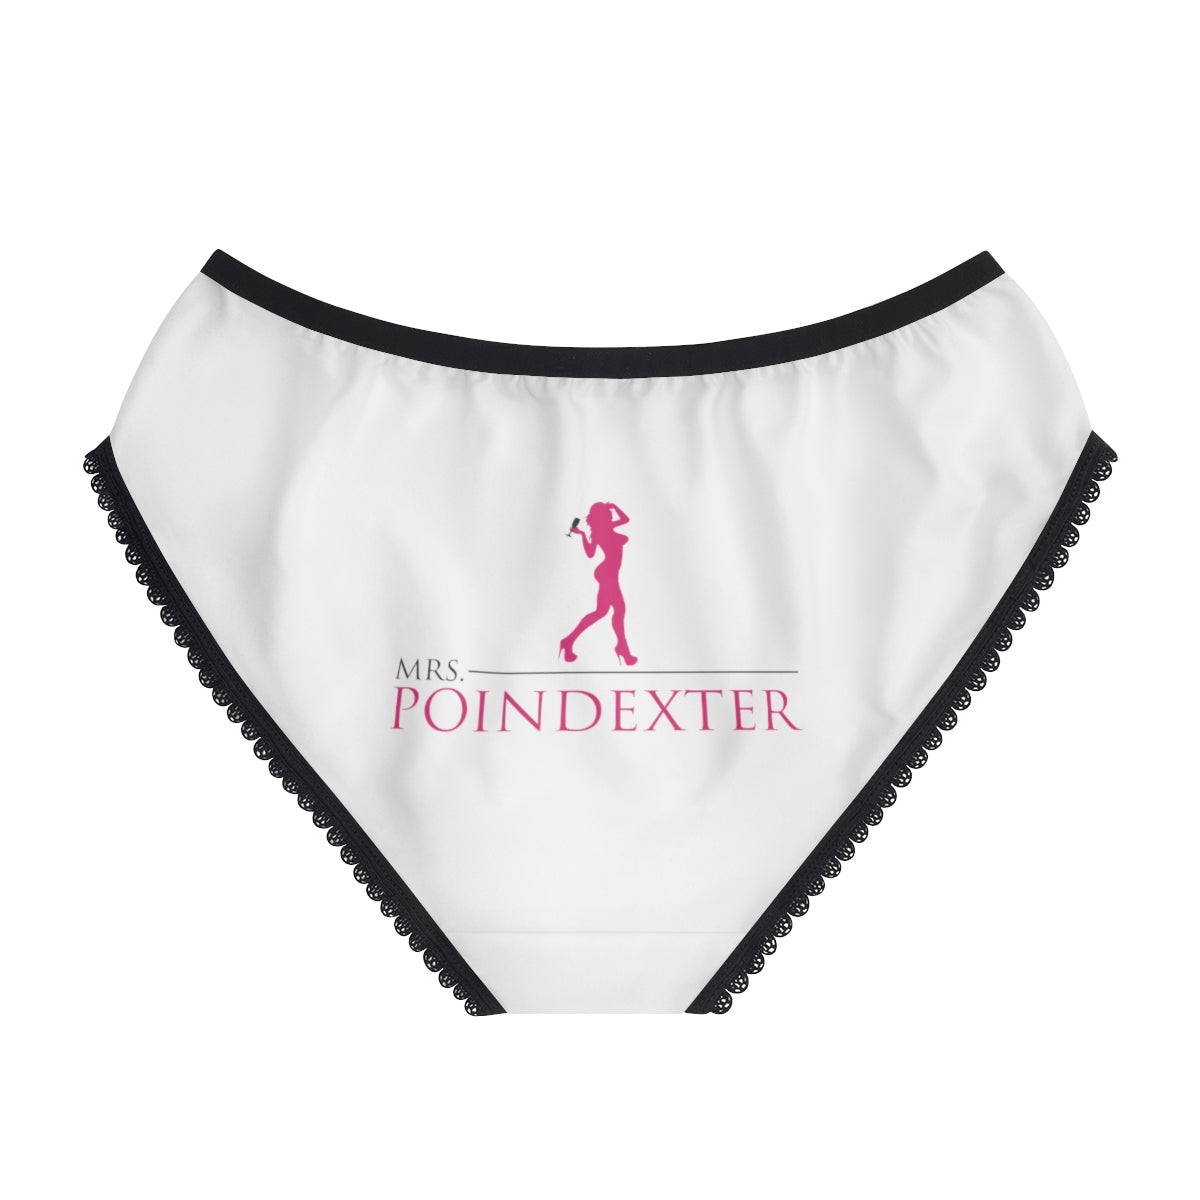 Mrs. Poindexter Panties